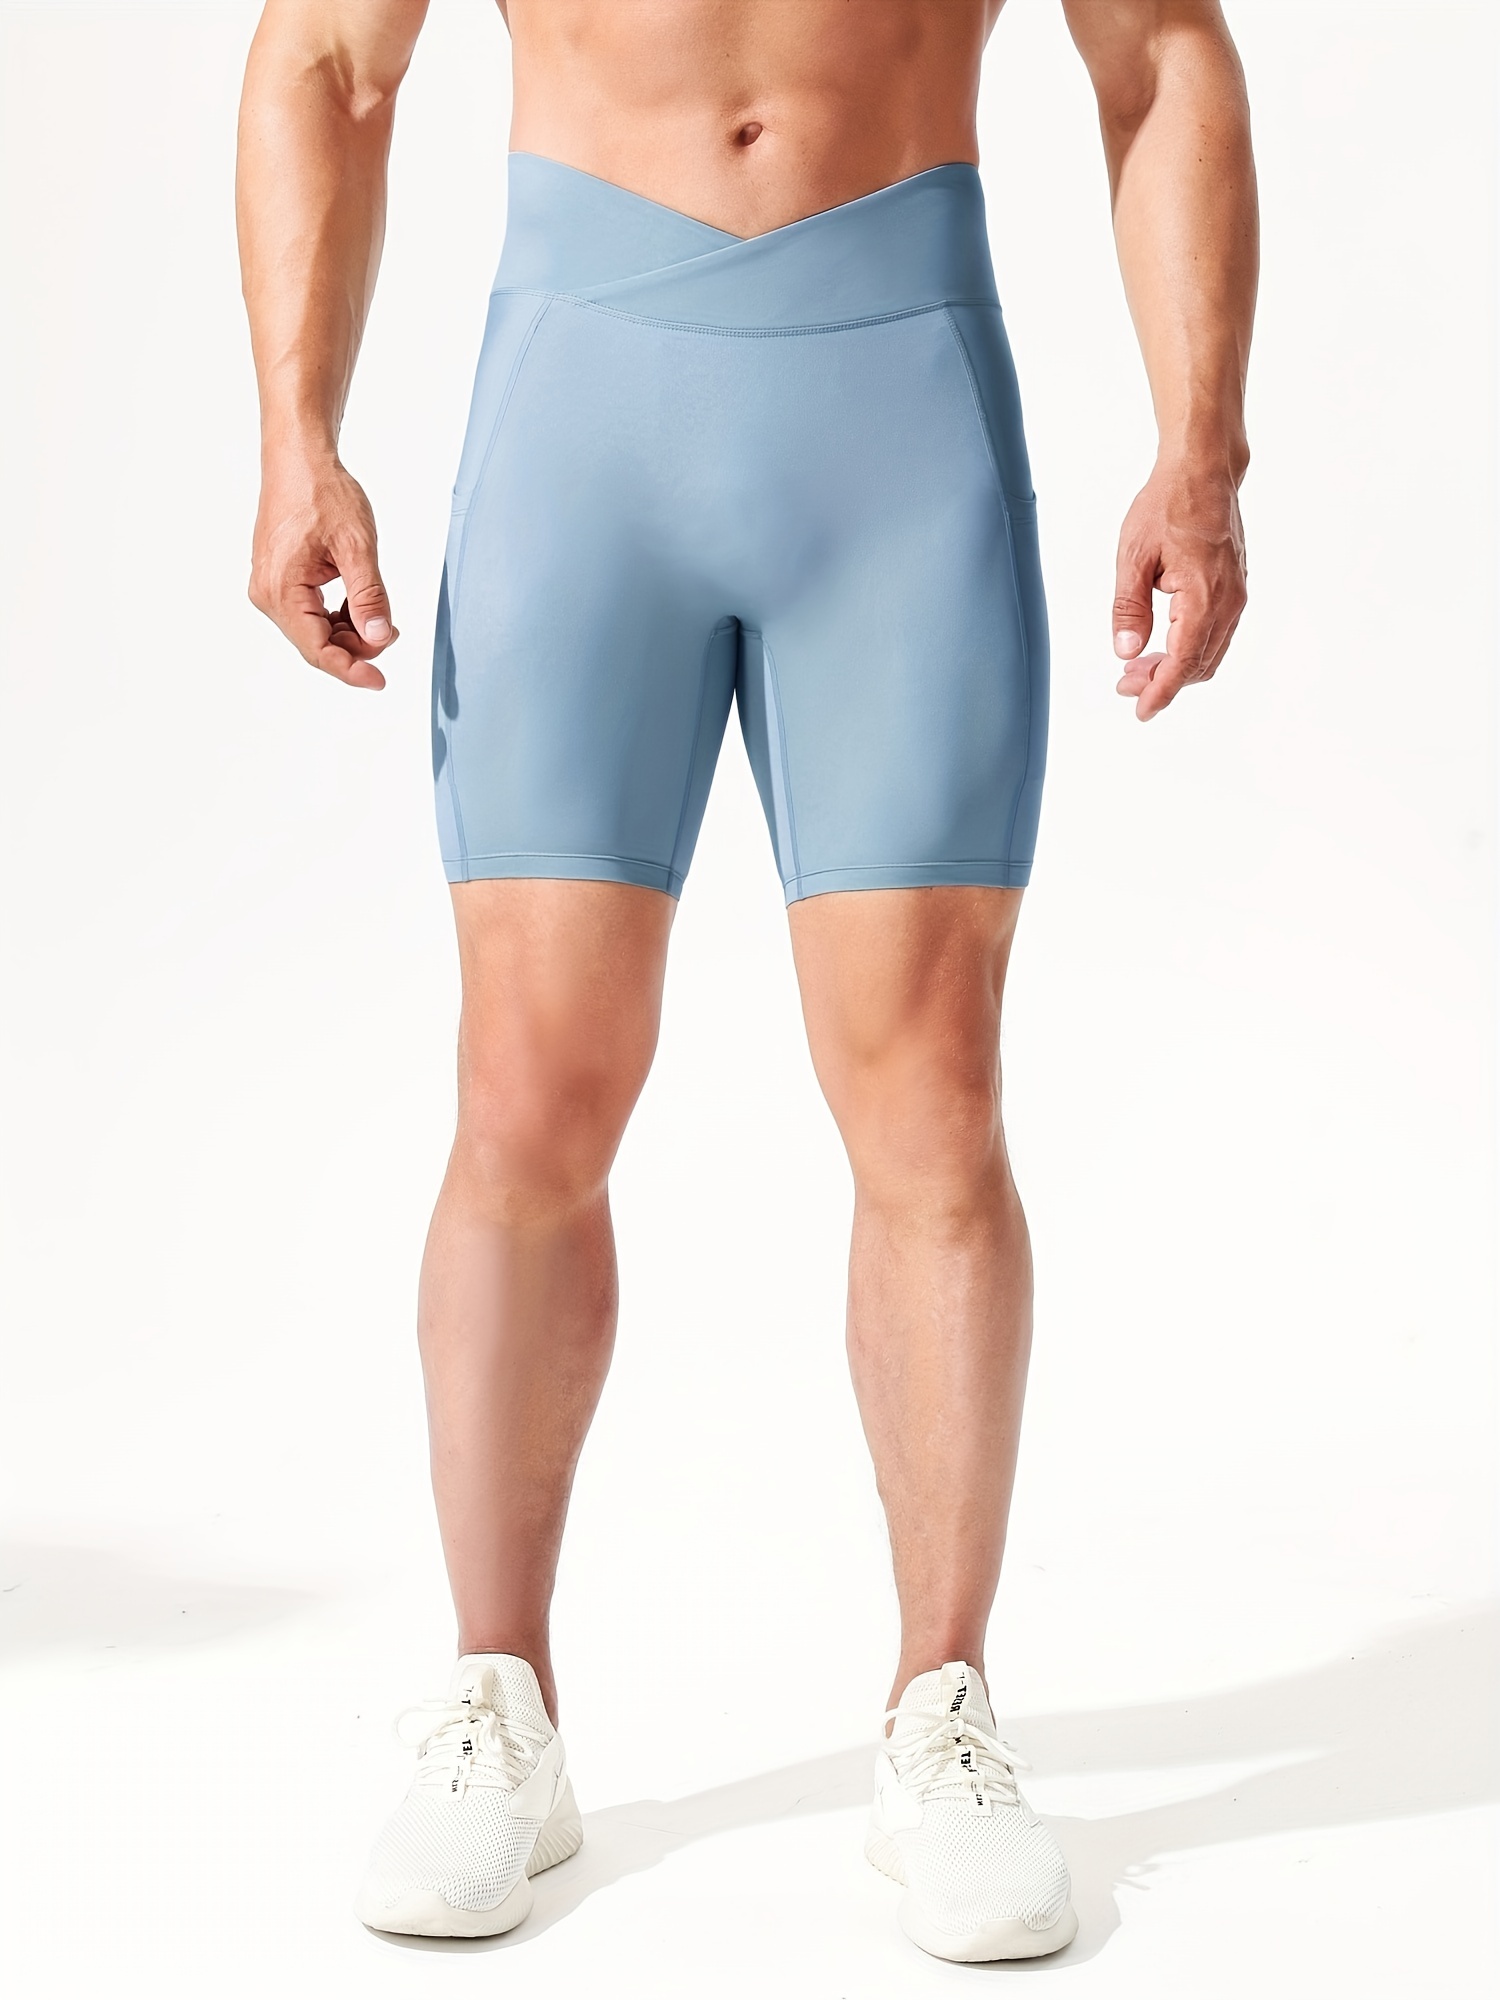 Pantalones Cortos Deportivos de Running para Hombre para Entrenamiento